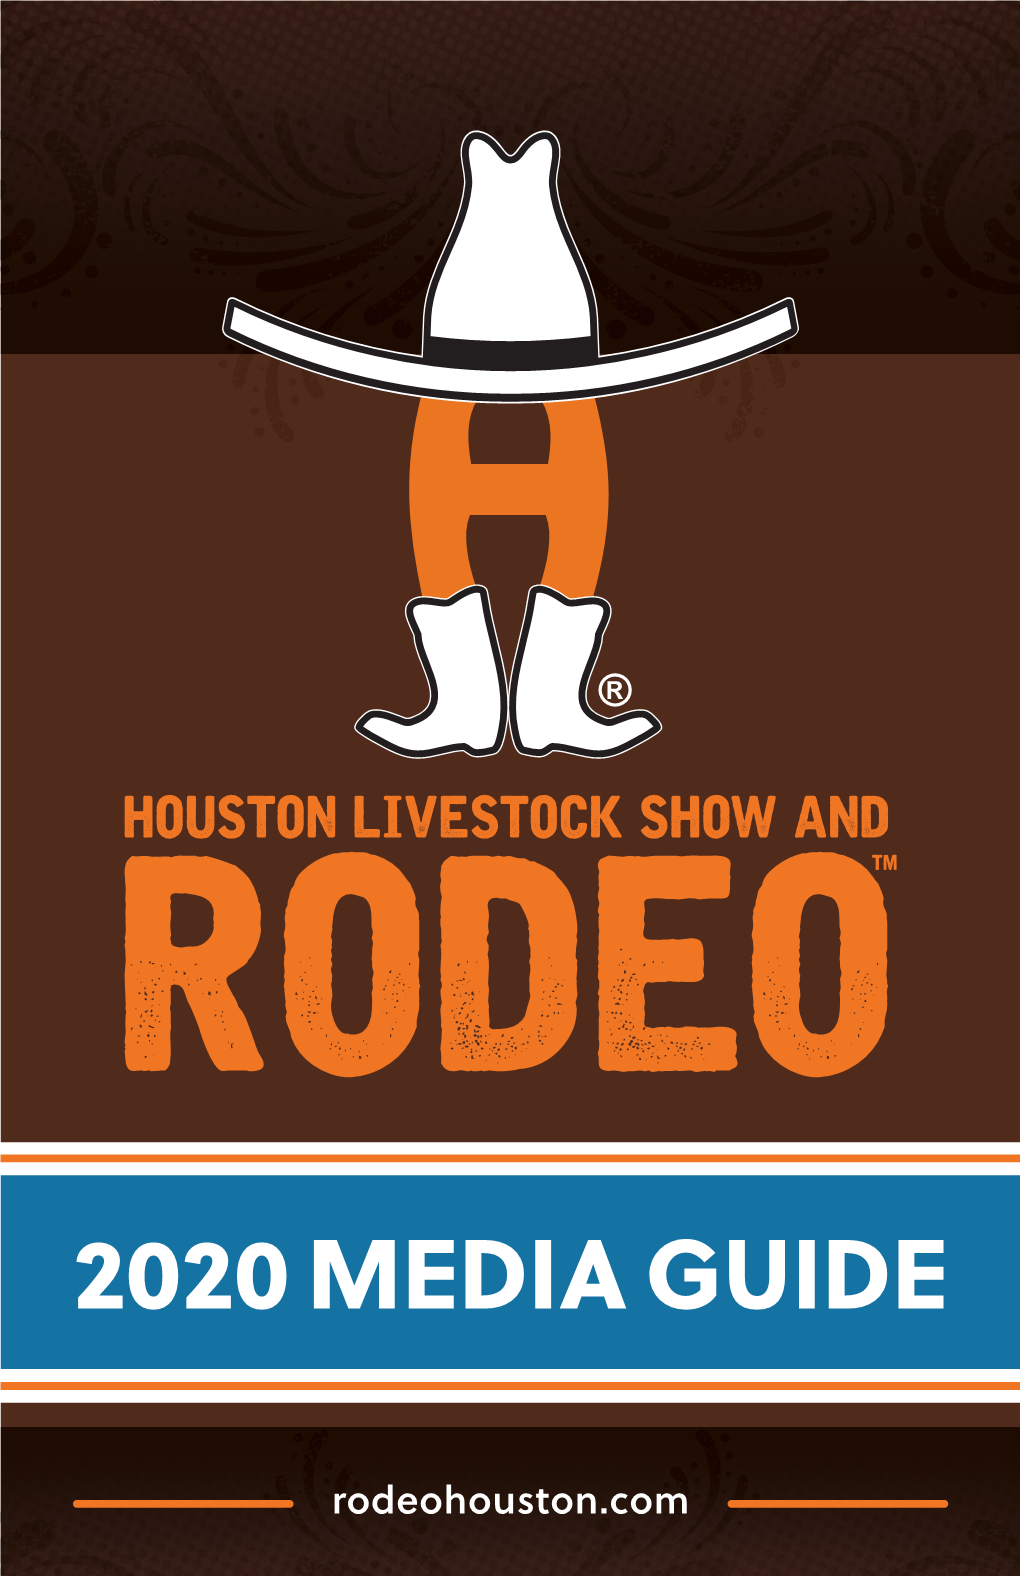 2020 Media Guide